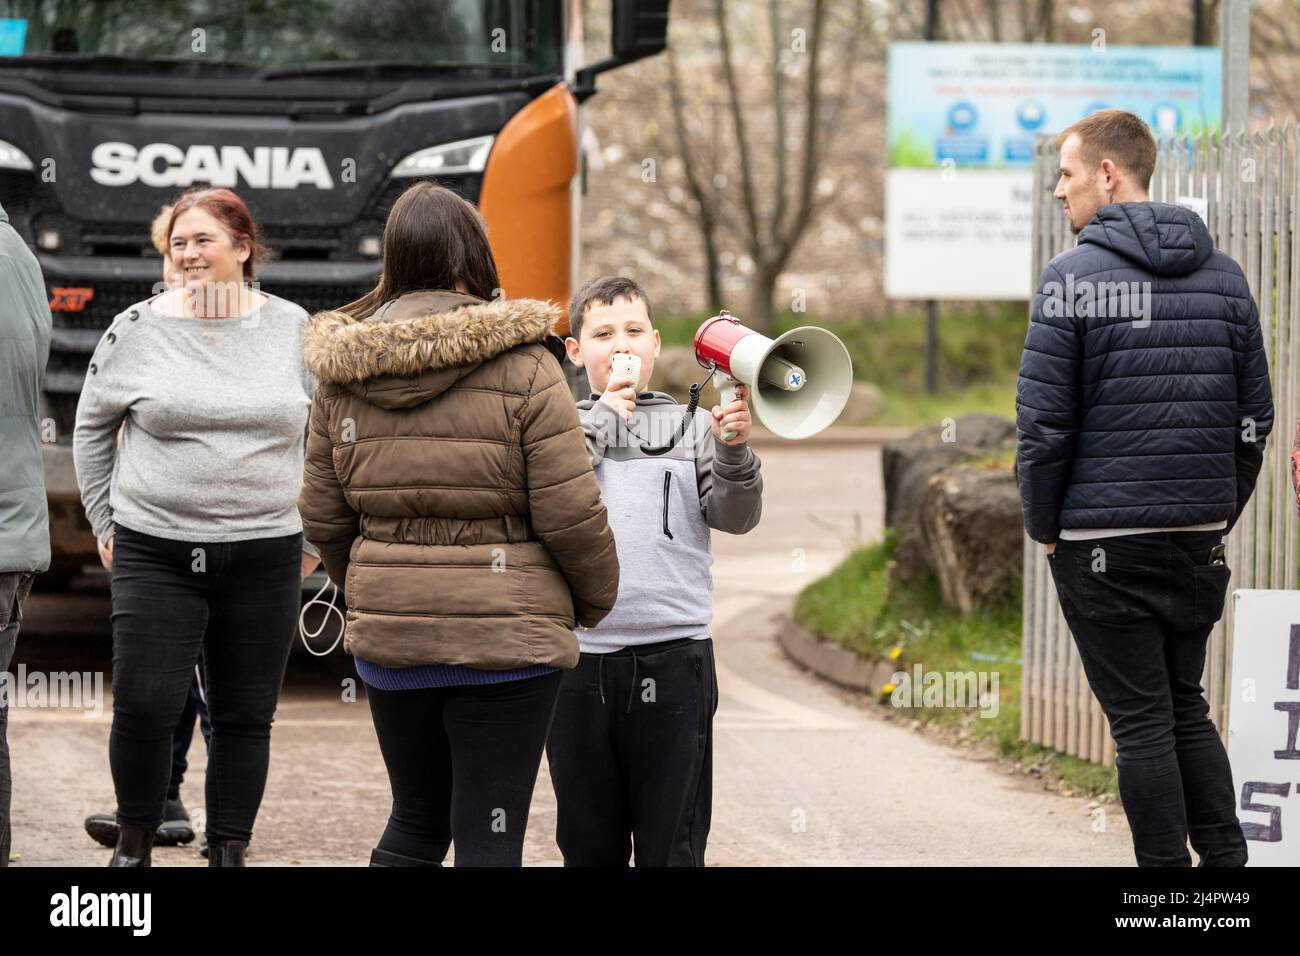 Kinder mit Transparenten, die vor der Mülldeponie für den Steinbruch von Wallys protestieren Silverdale, Staffordshire. Stoppen Sie die Stinkkampagne Stockfoto